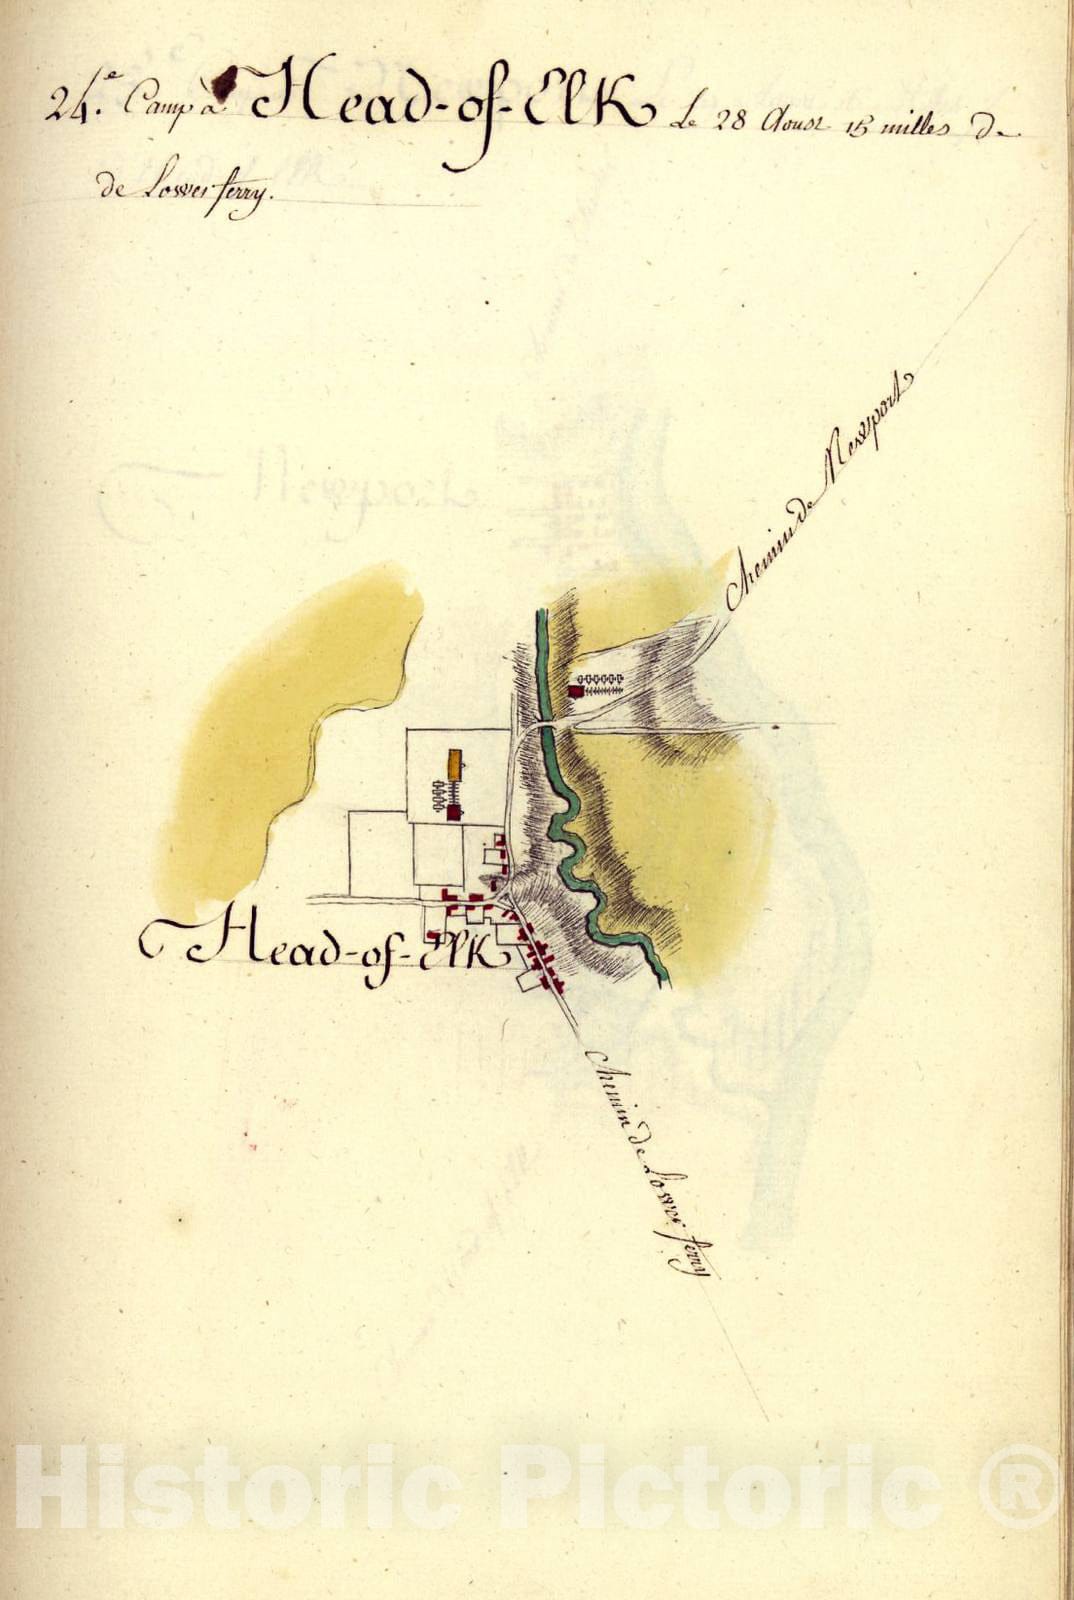 Historic 1782 Map - AmÃ©rique campagne. - Camp a Head-of-Elk